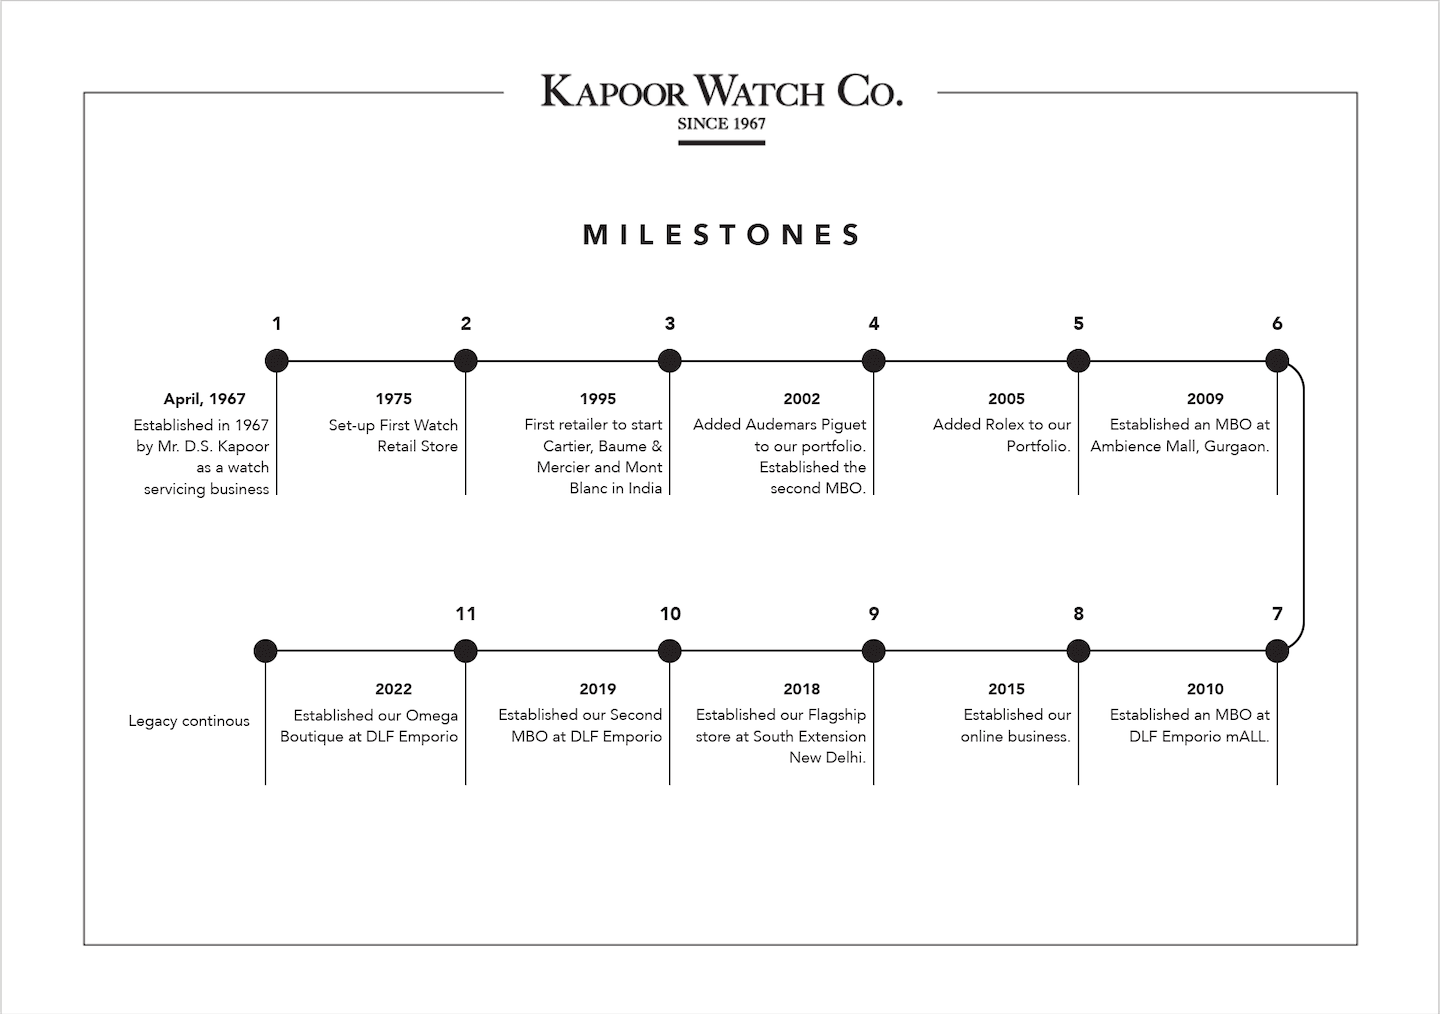 KWC - Milestones